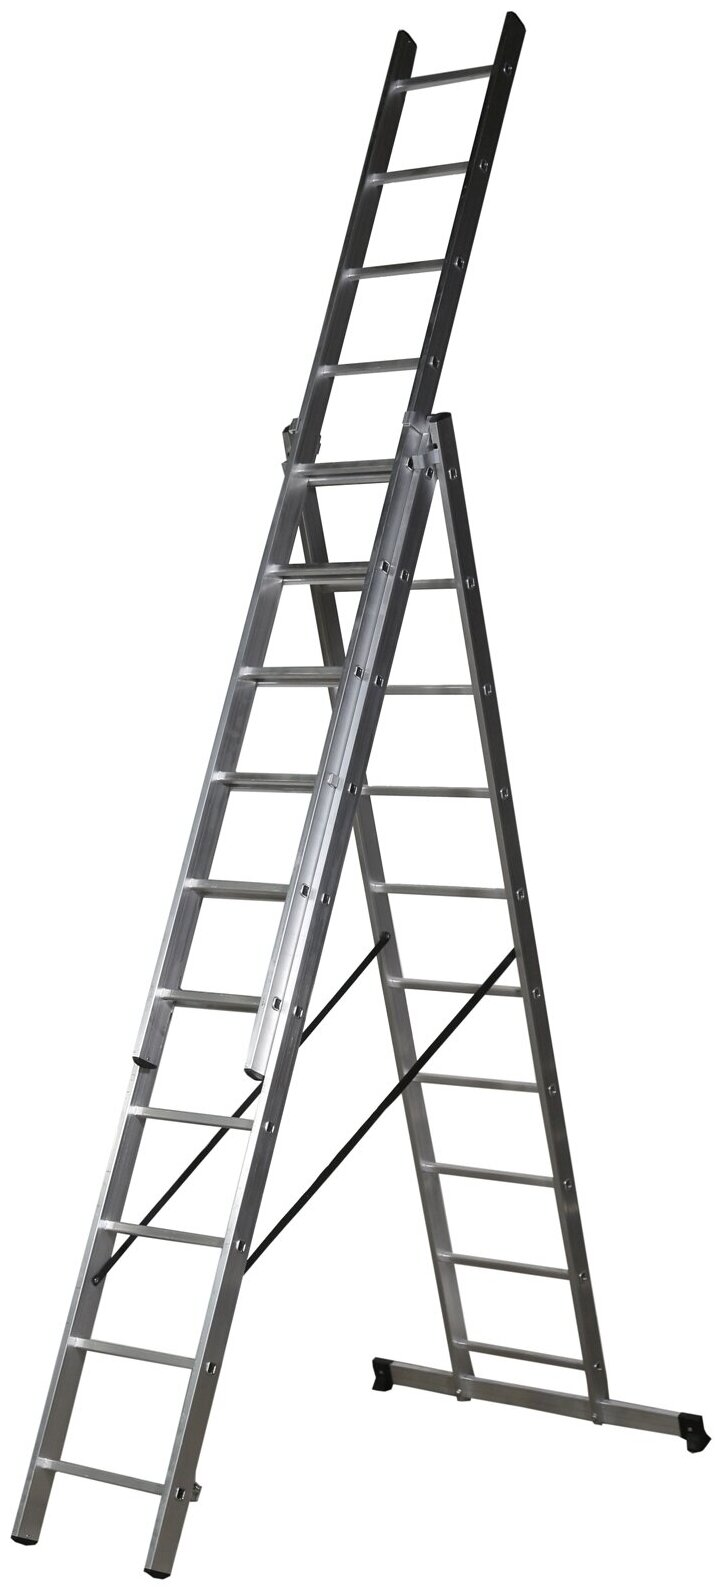 Лестница трехсекционная завод лестниц Professional высота 77м 3х10 ступеней